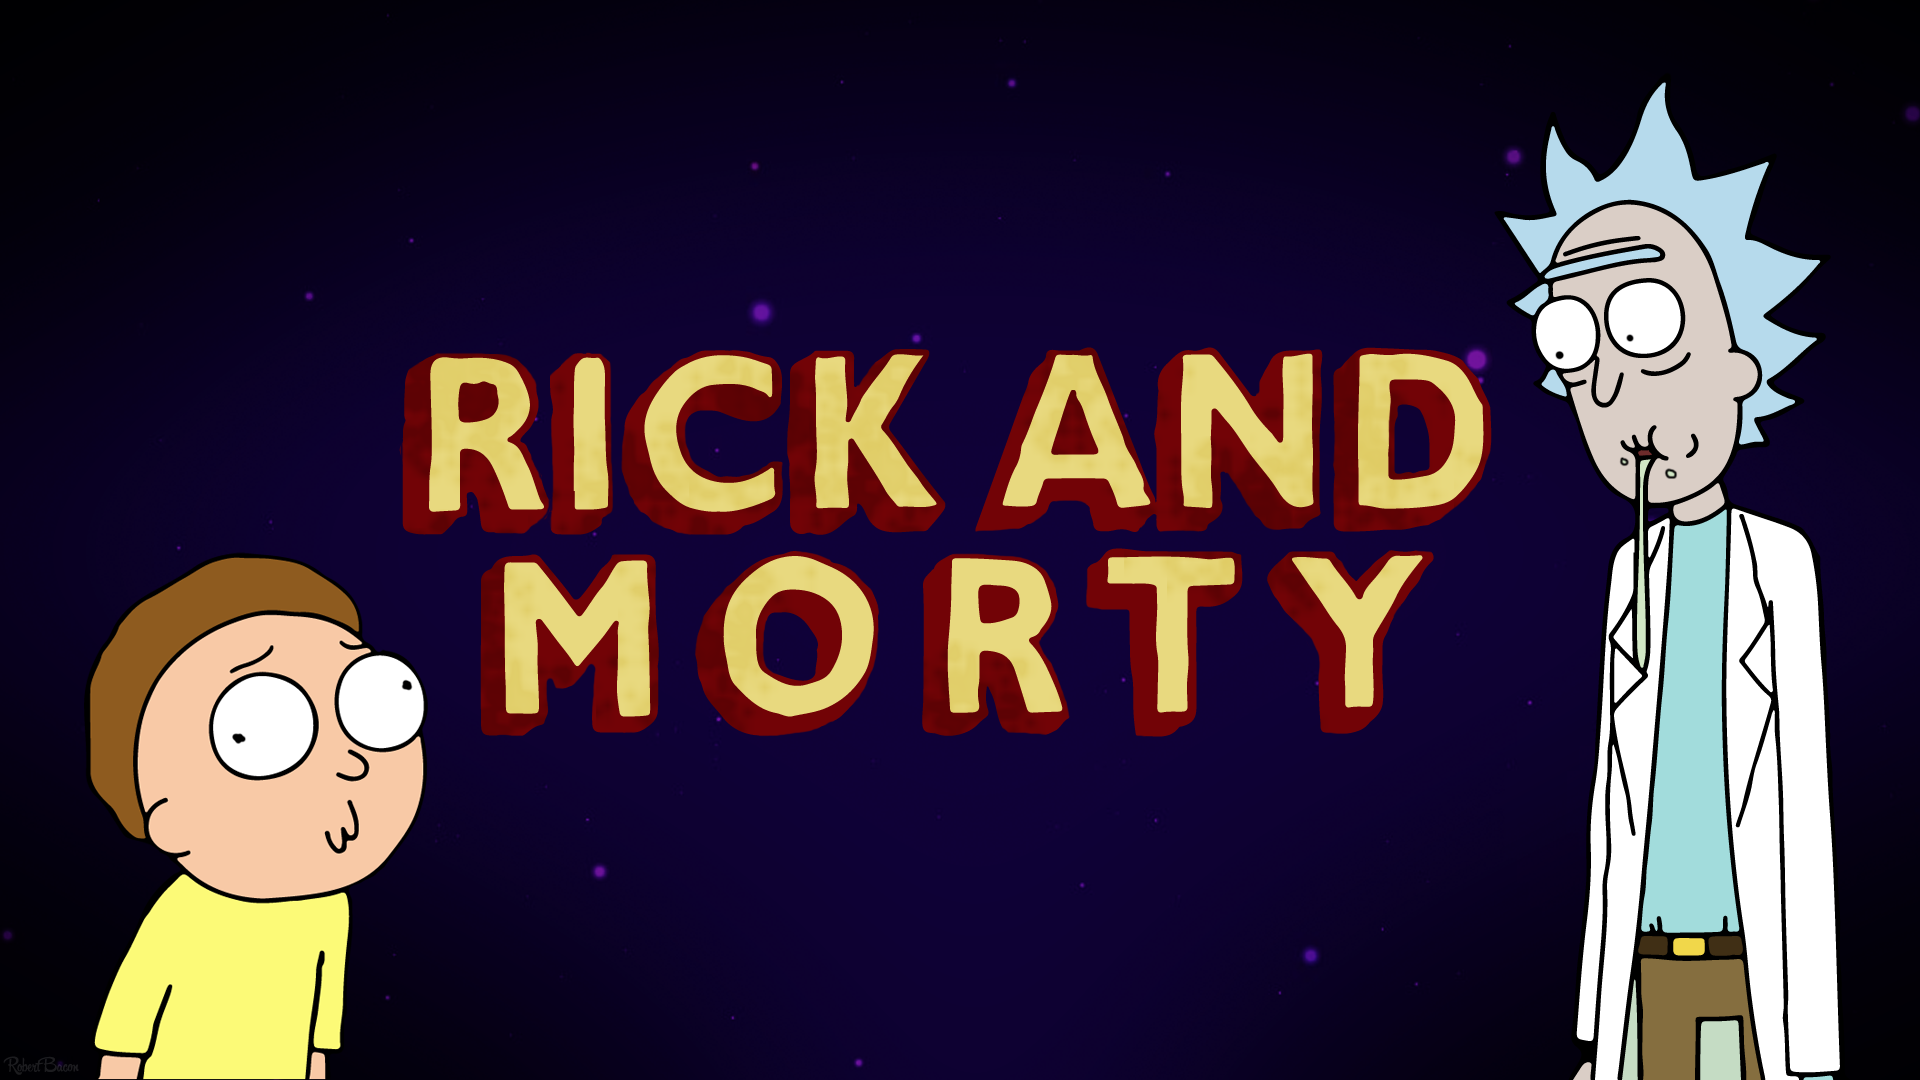 Rick and Morty Wallpaper, 1920x1080. Cartoon wallpaper, Rick